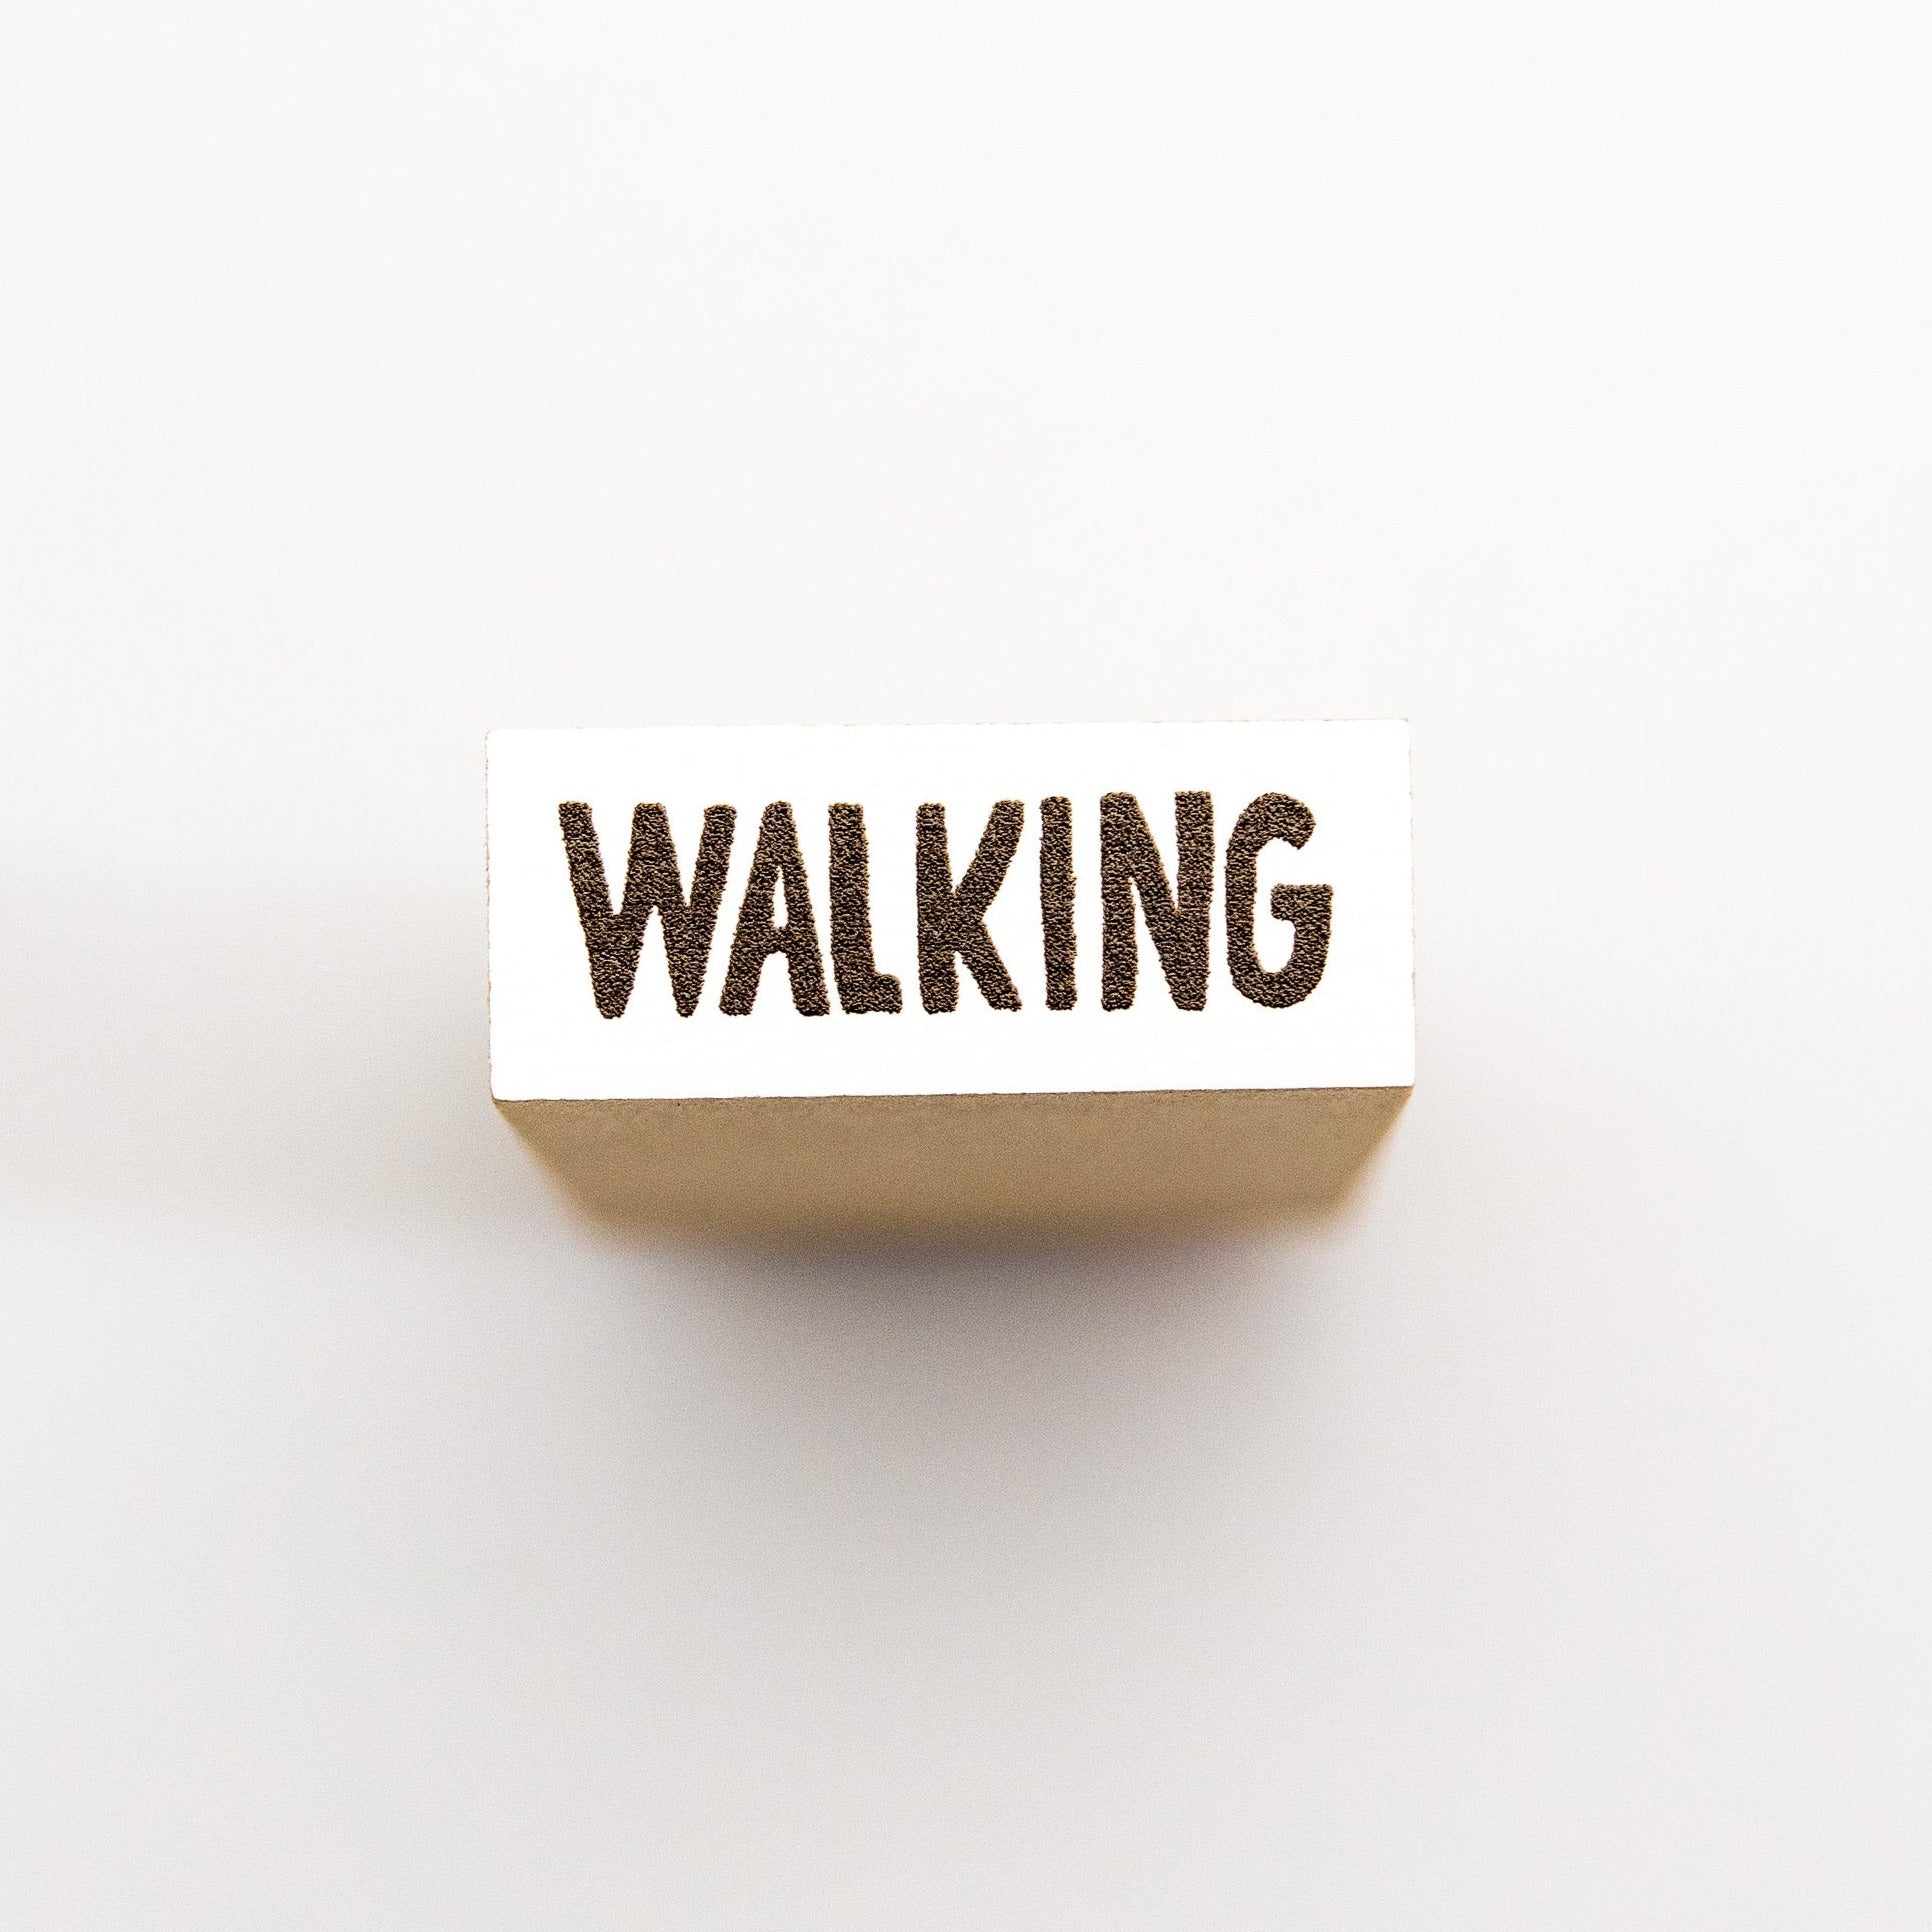 WALKING